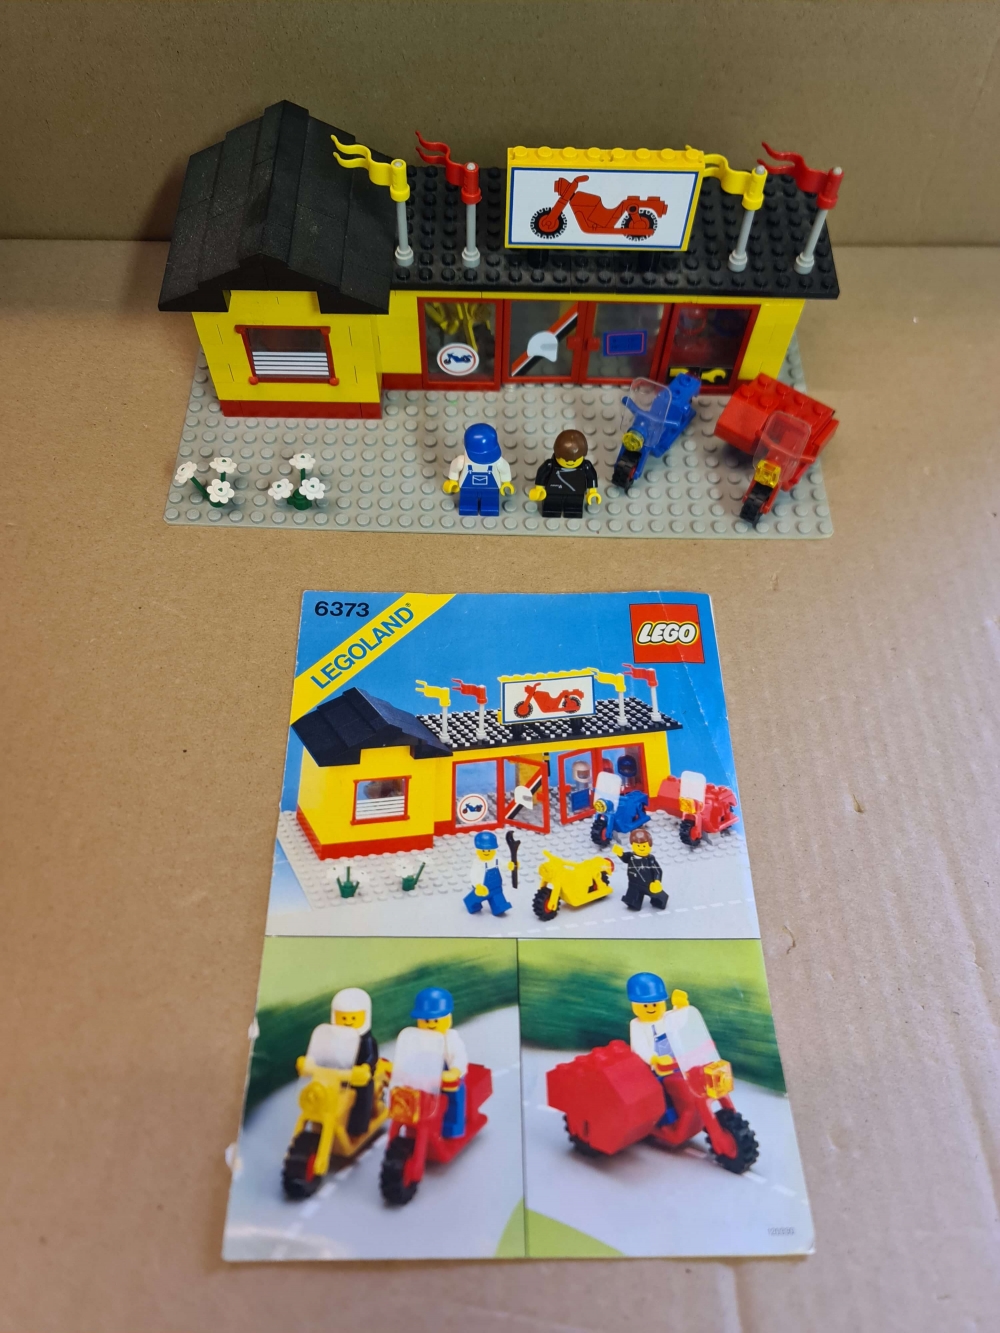 Sett 6373 fra Lego Classic Town serien.
Nydelig sett. 
Komplett med manual. 